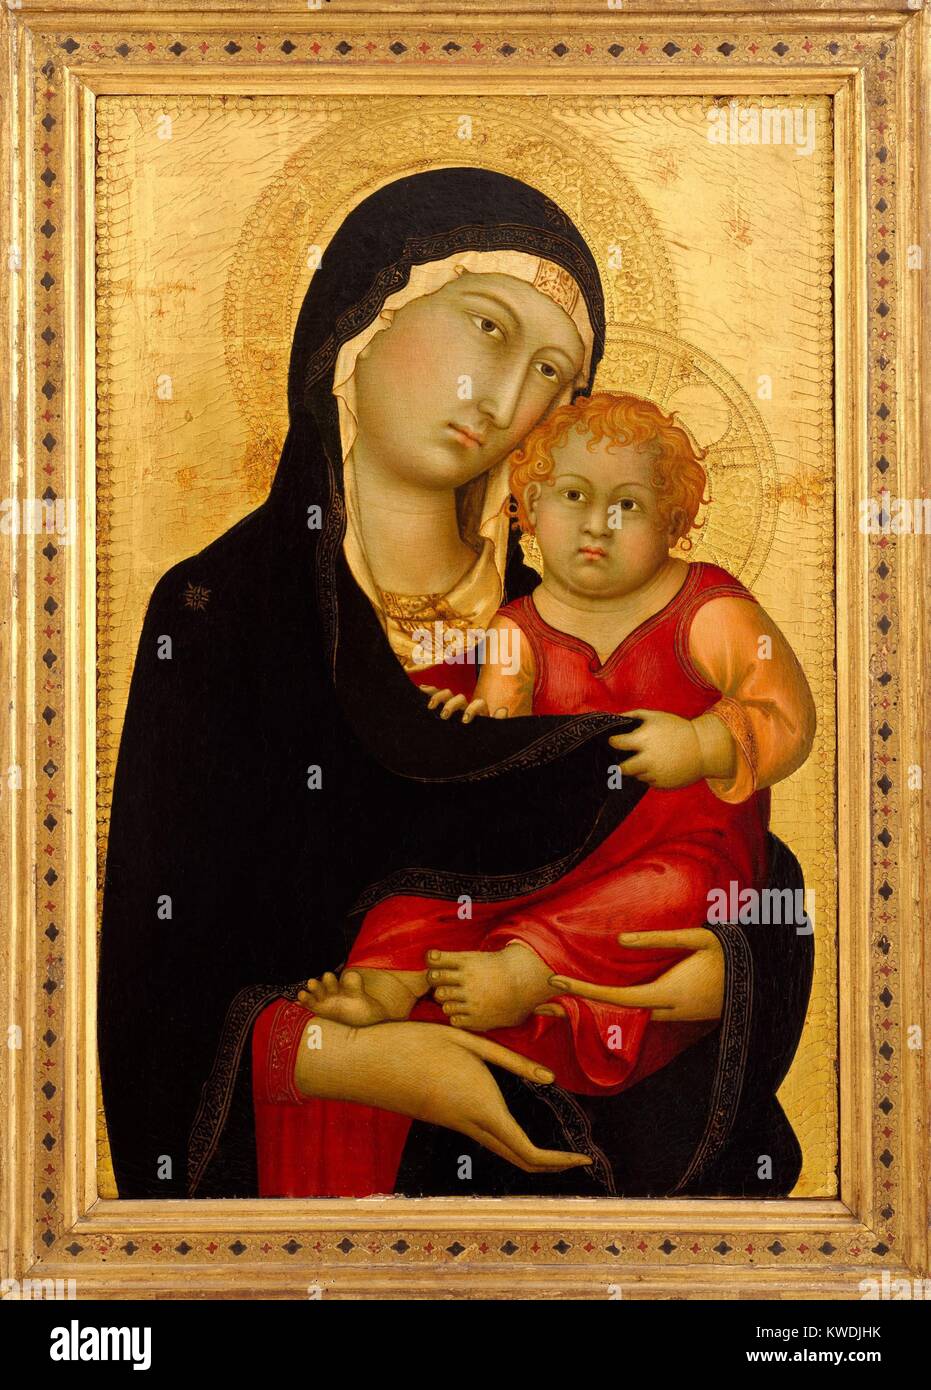 Vierge et l'enfant, de Simone Martini, 1326, la peinture italienne Proto-Renaissance, tempera sur bois. Simone Martini, un peintre siennois, créé dans le cadre d'un retable lambris. Il a conservé son cadre d'origine (BSLOC   2017 16 34) Banque D'Images